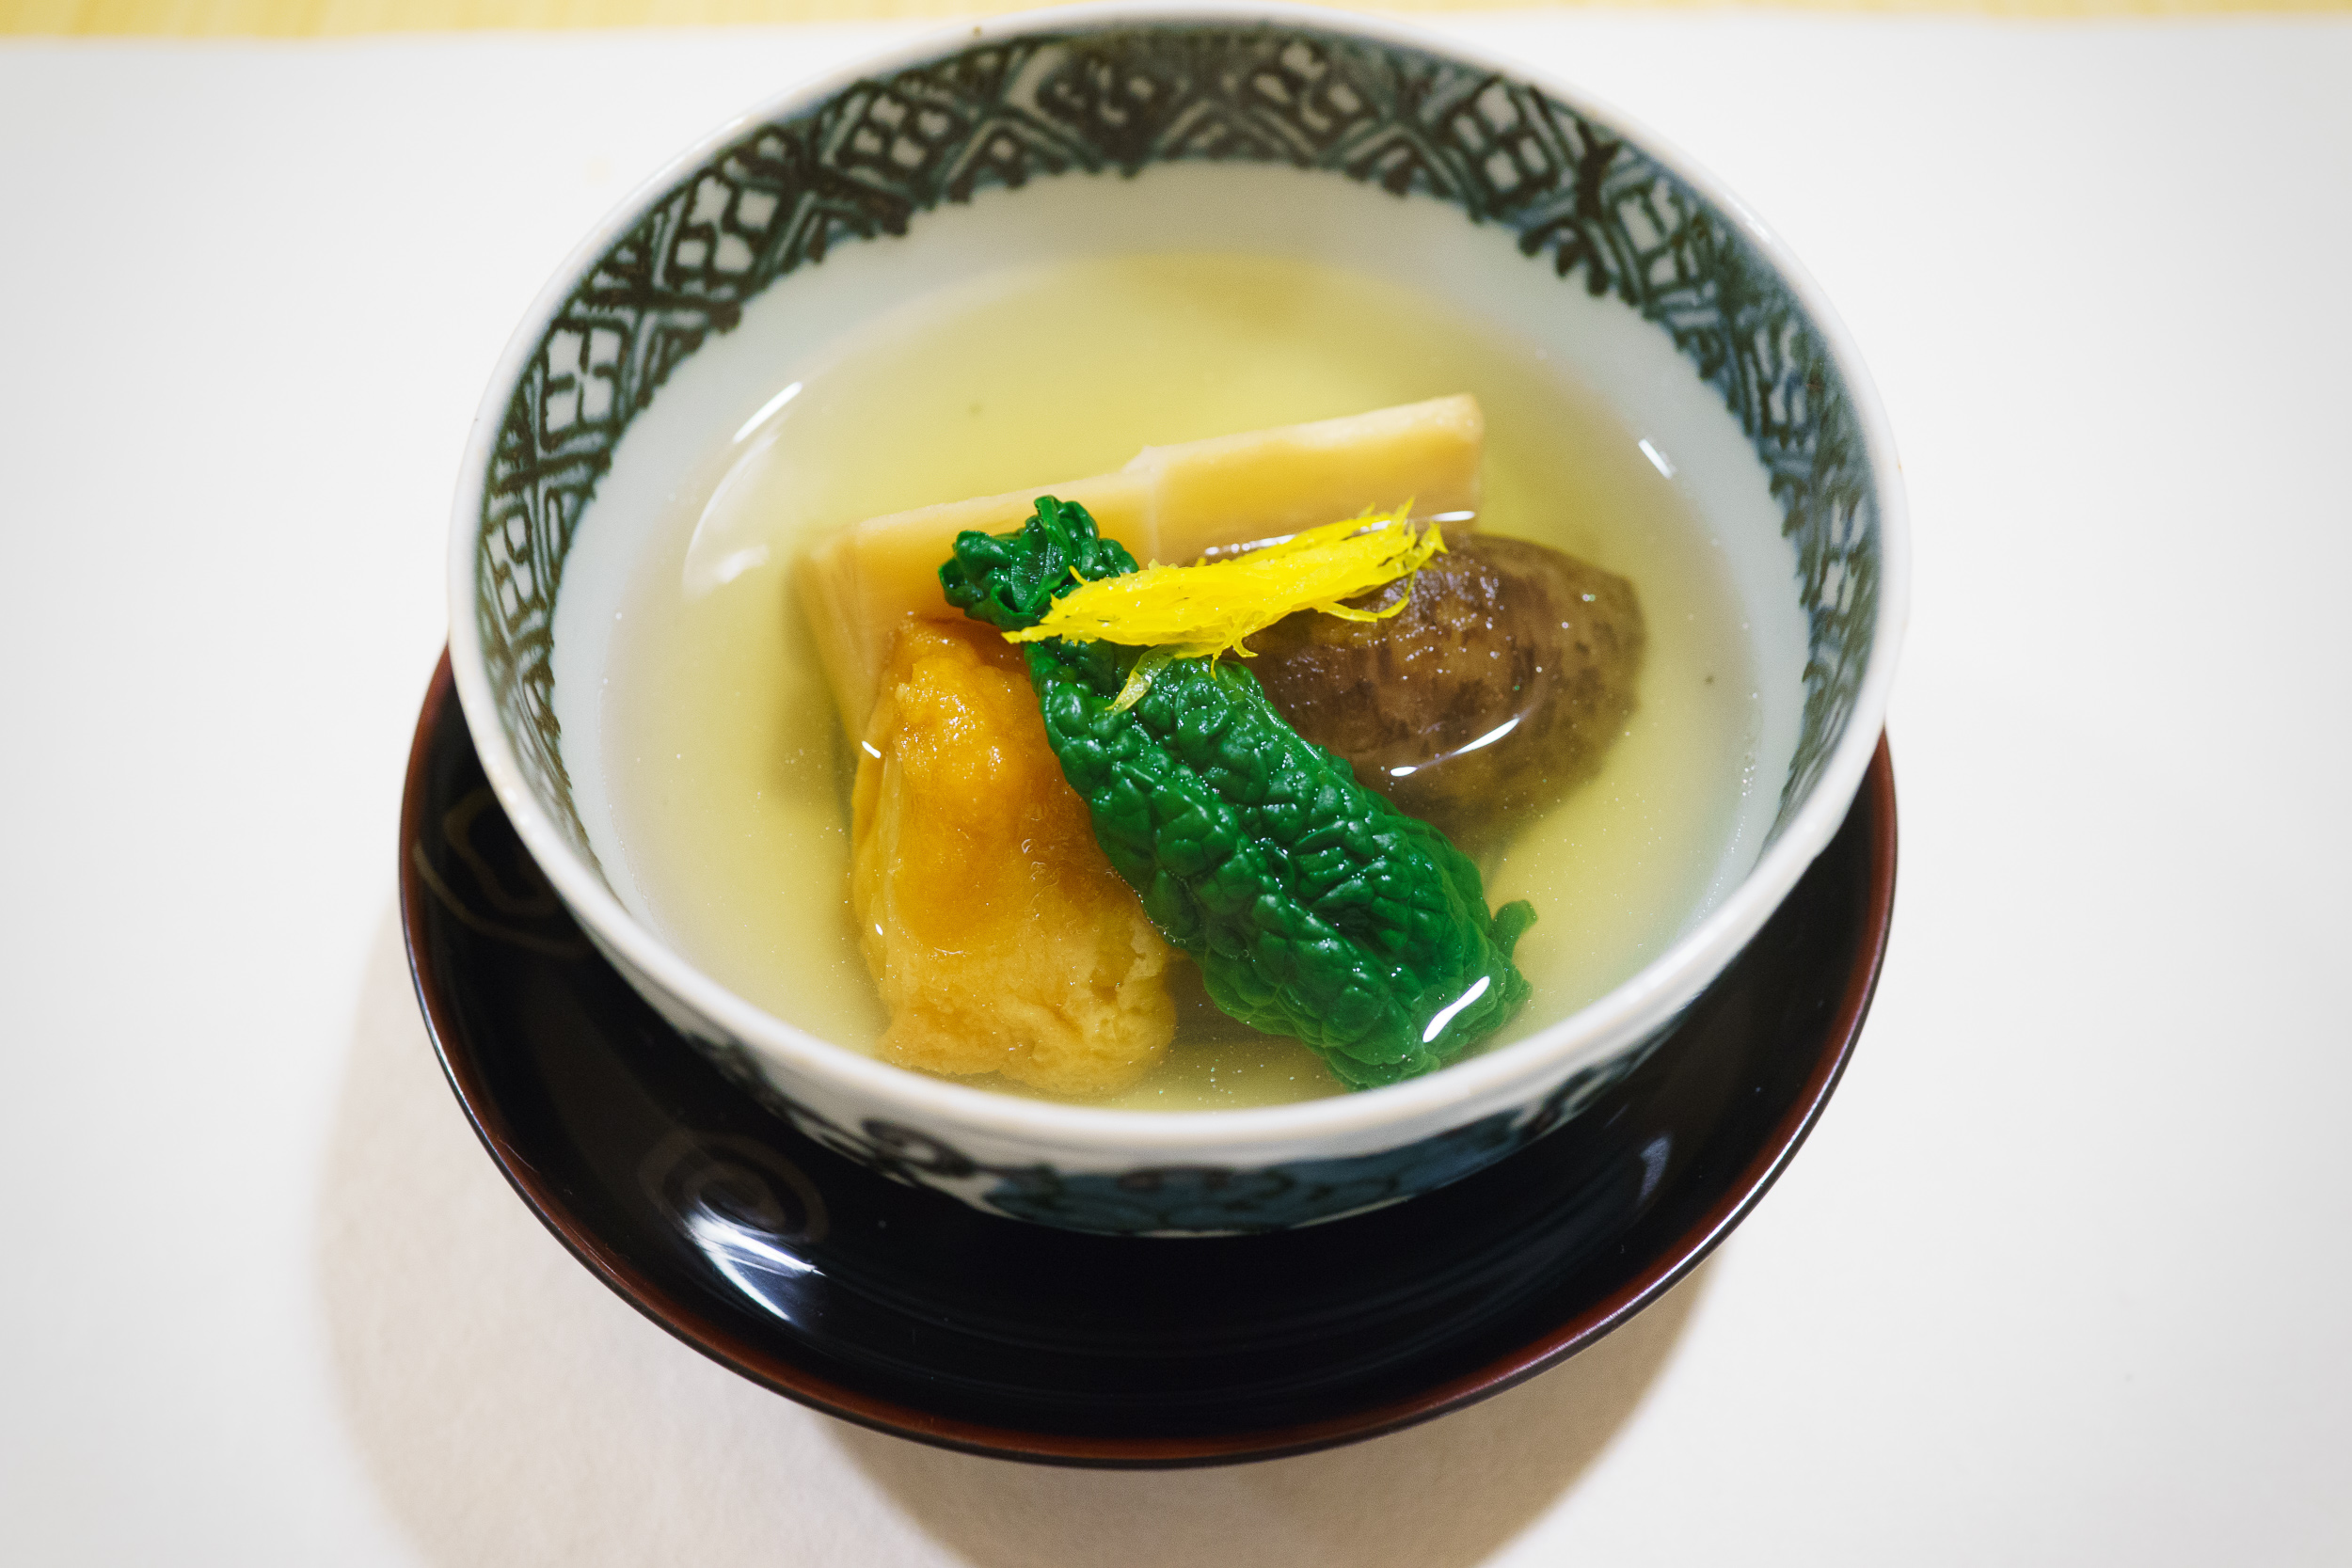 10th Course: Taro soup